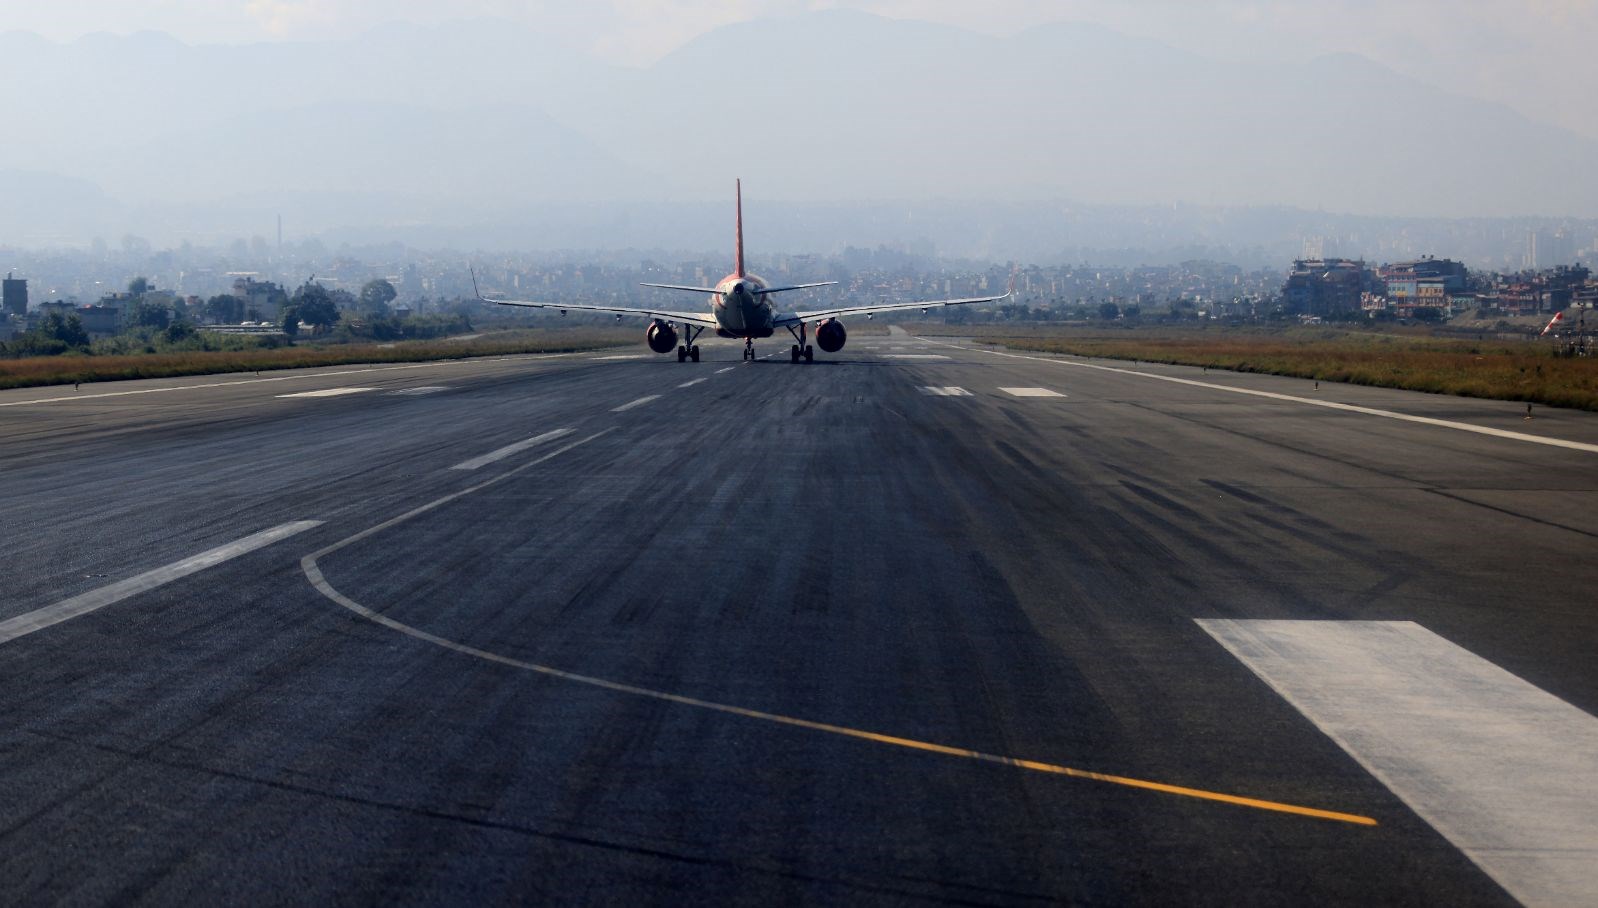 Nepal’de içinde 19 kişi bulunan uçak kalkış sırasında düştü: 18 cansız bedene ulaşıldı, pilot kurtuldu